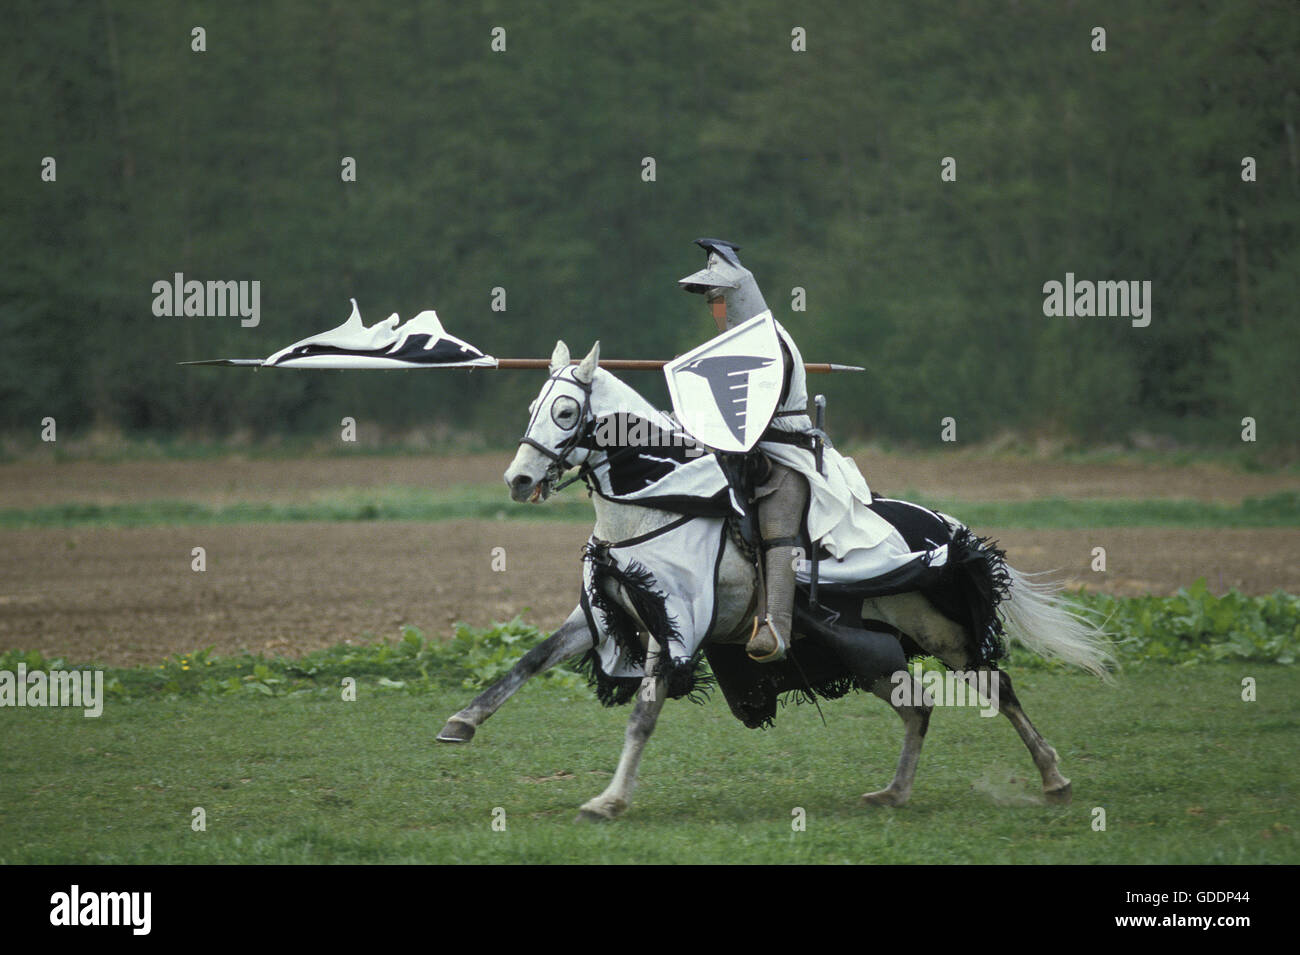 Torneo de caballería medieval en Francia Foto de stock